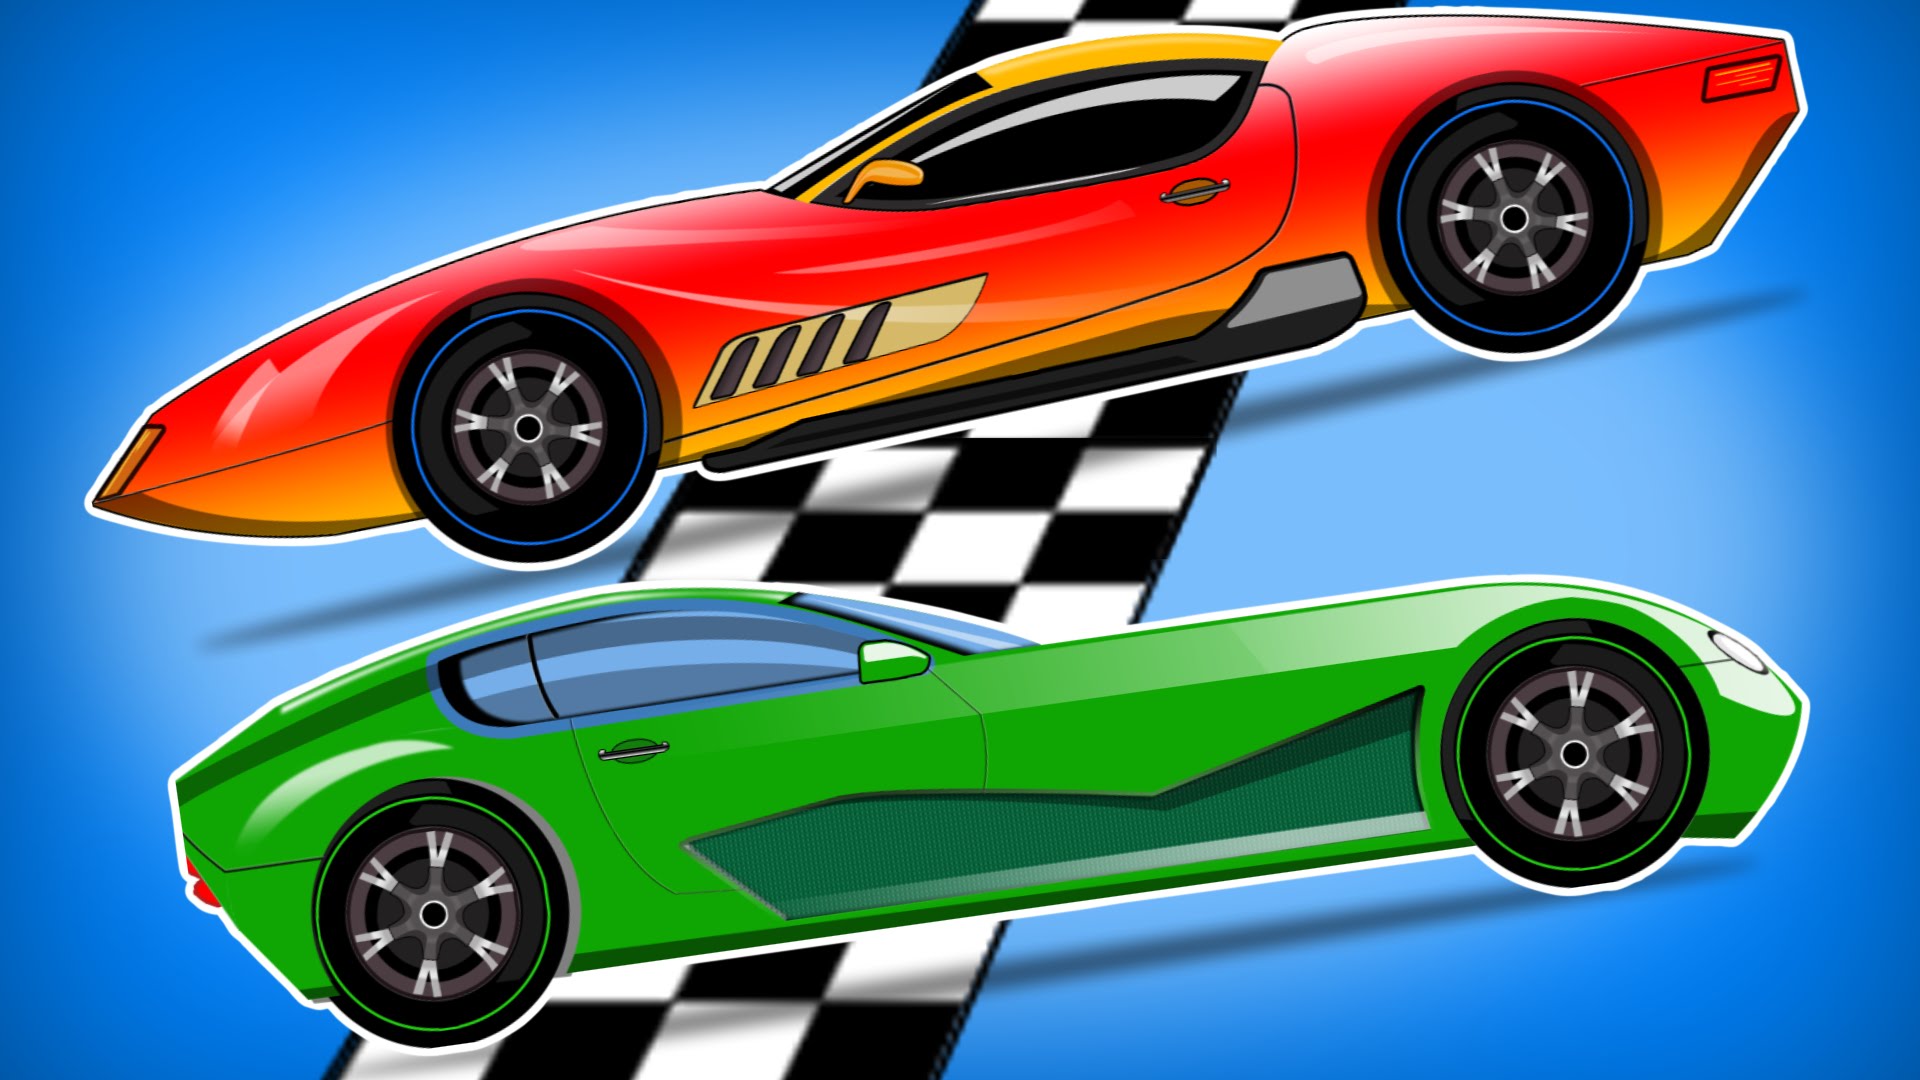 Car Race | Cars for Kids | Videos for Children's - YouTube